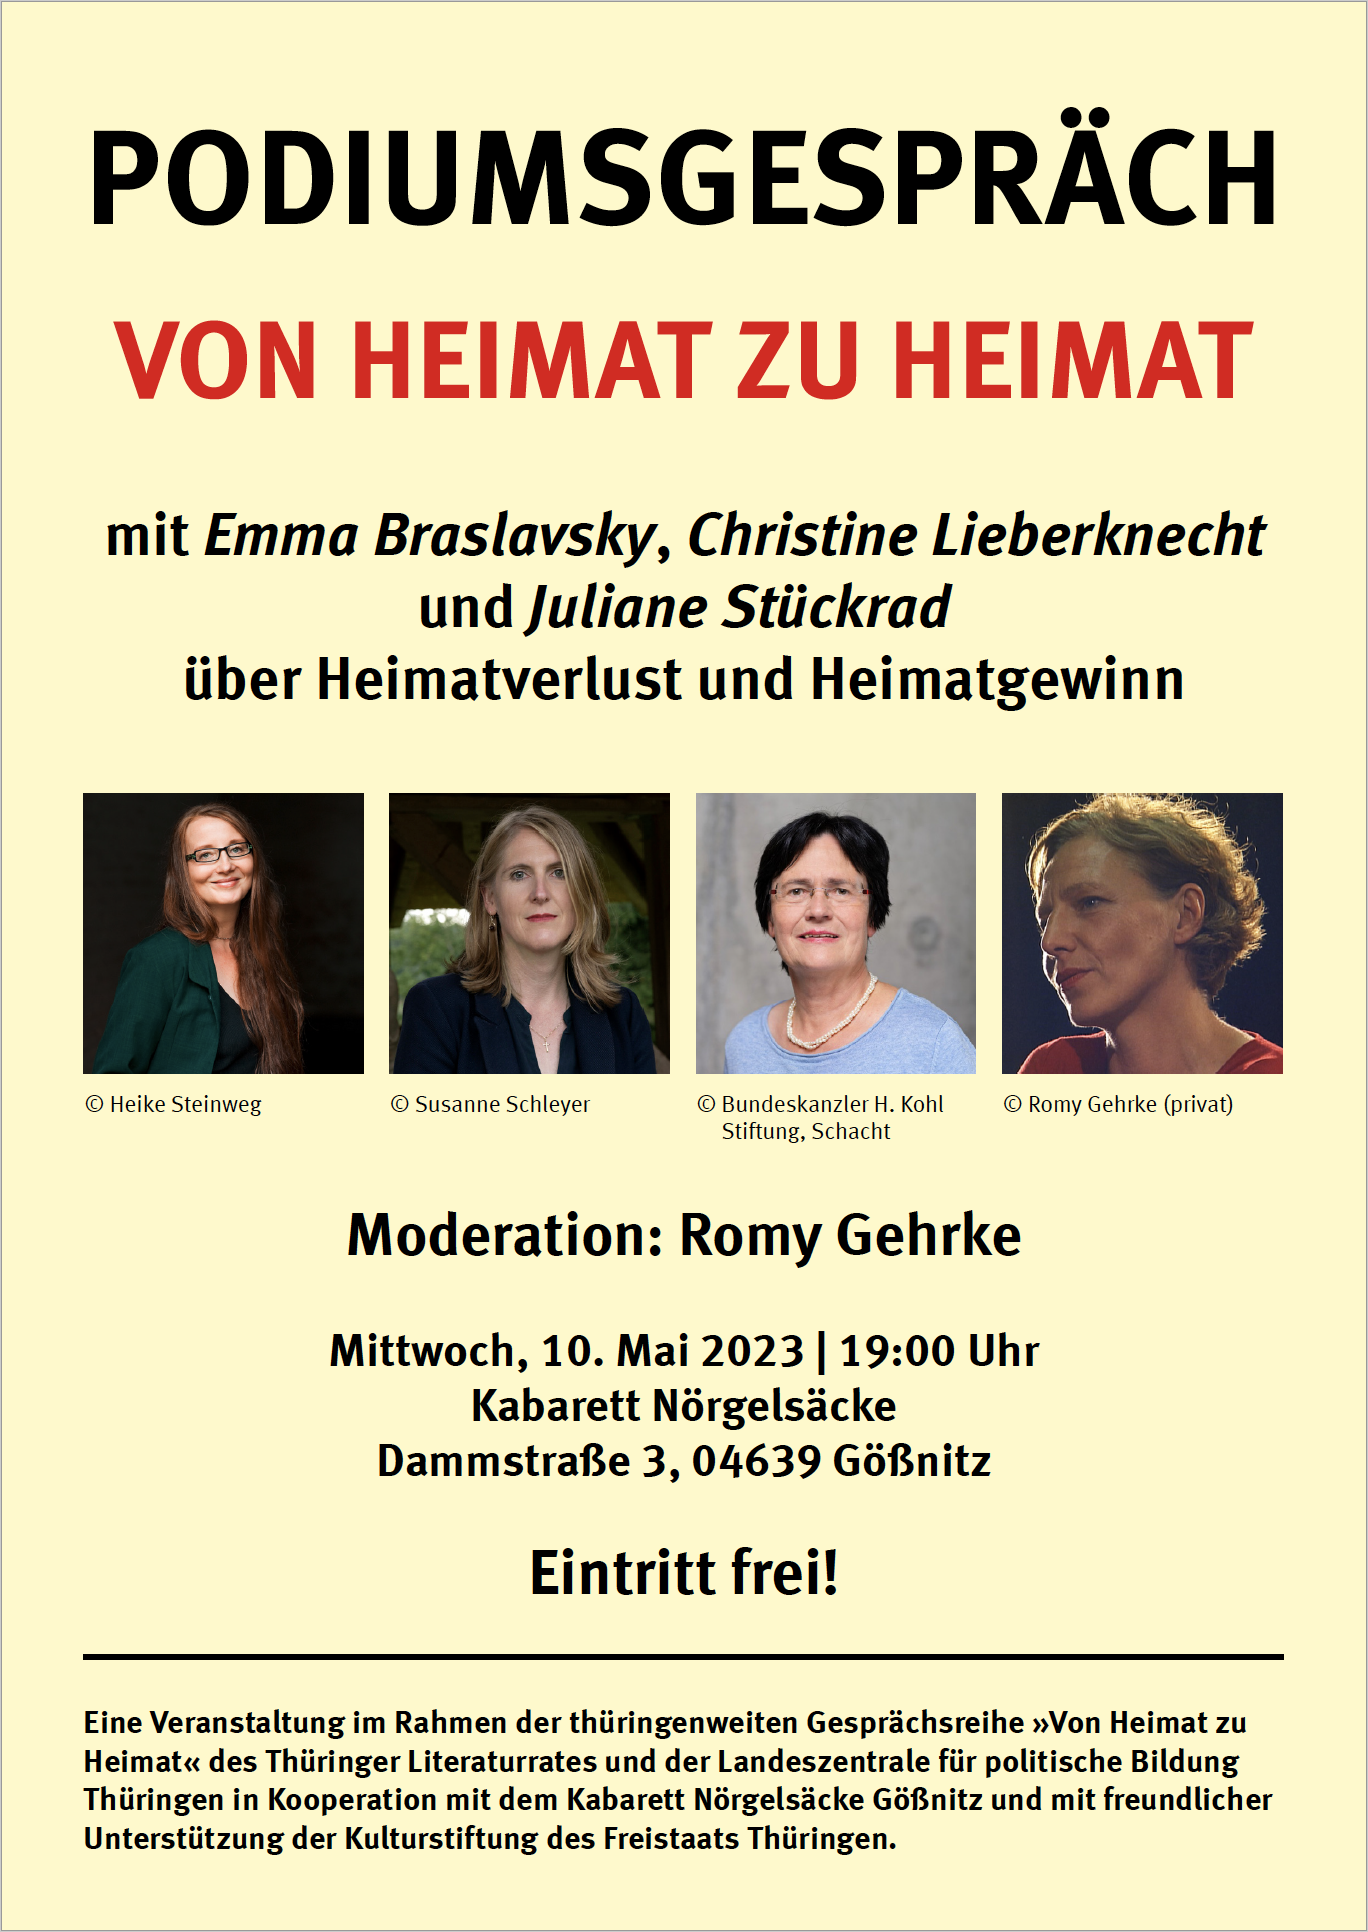 »Von Heimat zu Heimat« - Podiumsgespräch mit Emma Braslavsky, Christine Lieberknecht und Juliane Stückrad in Gößnitz @ Kabarett Nörgelsäcke